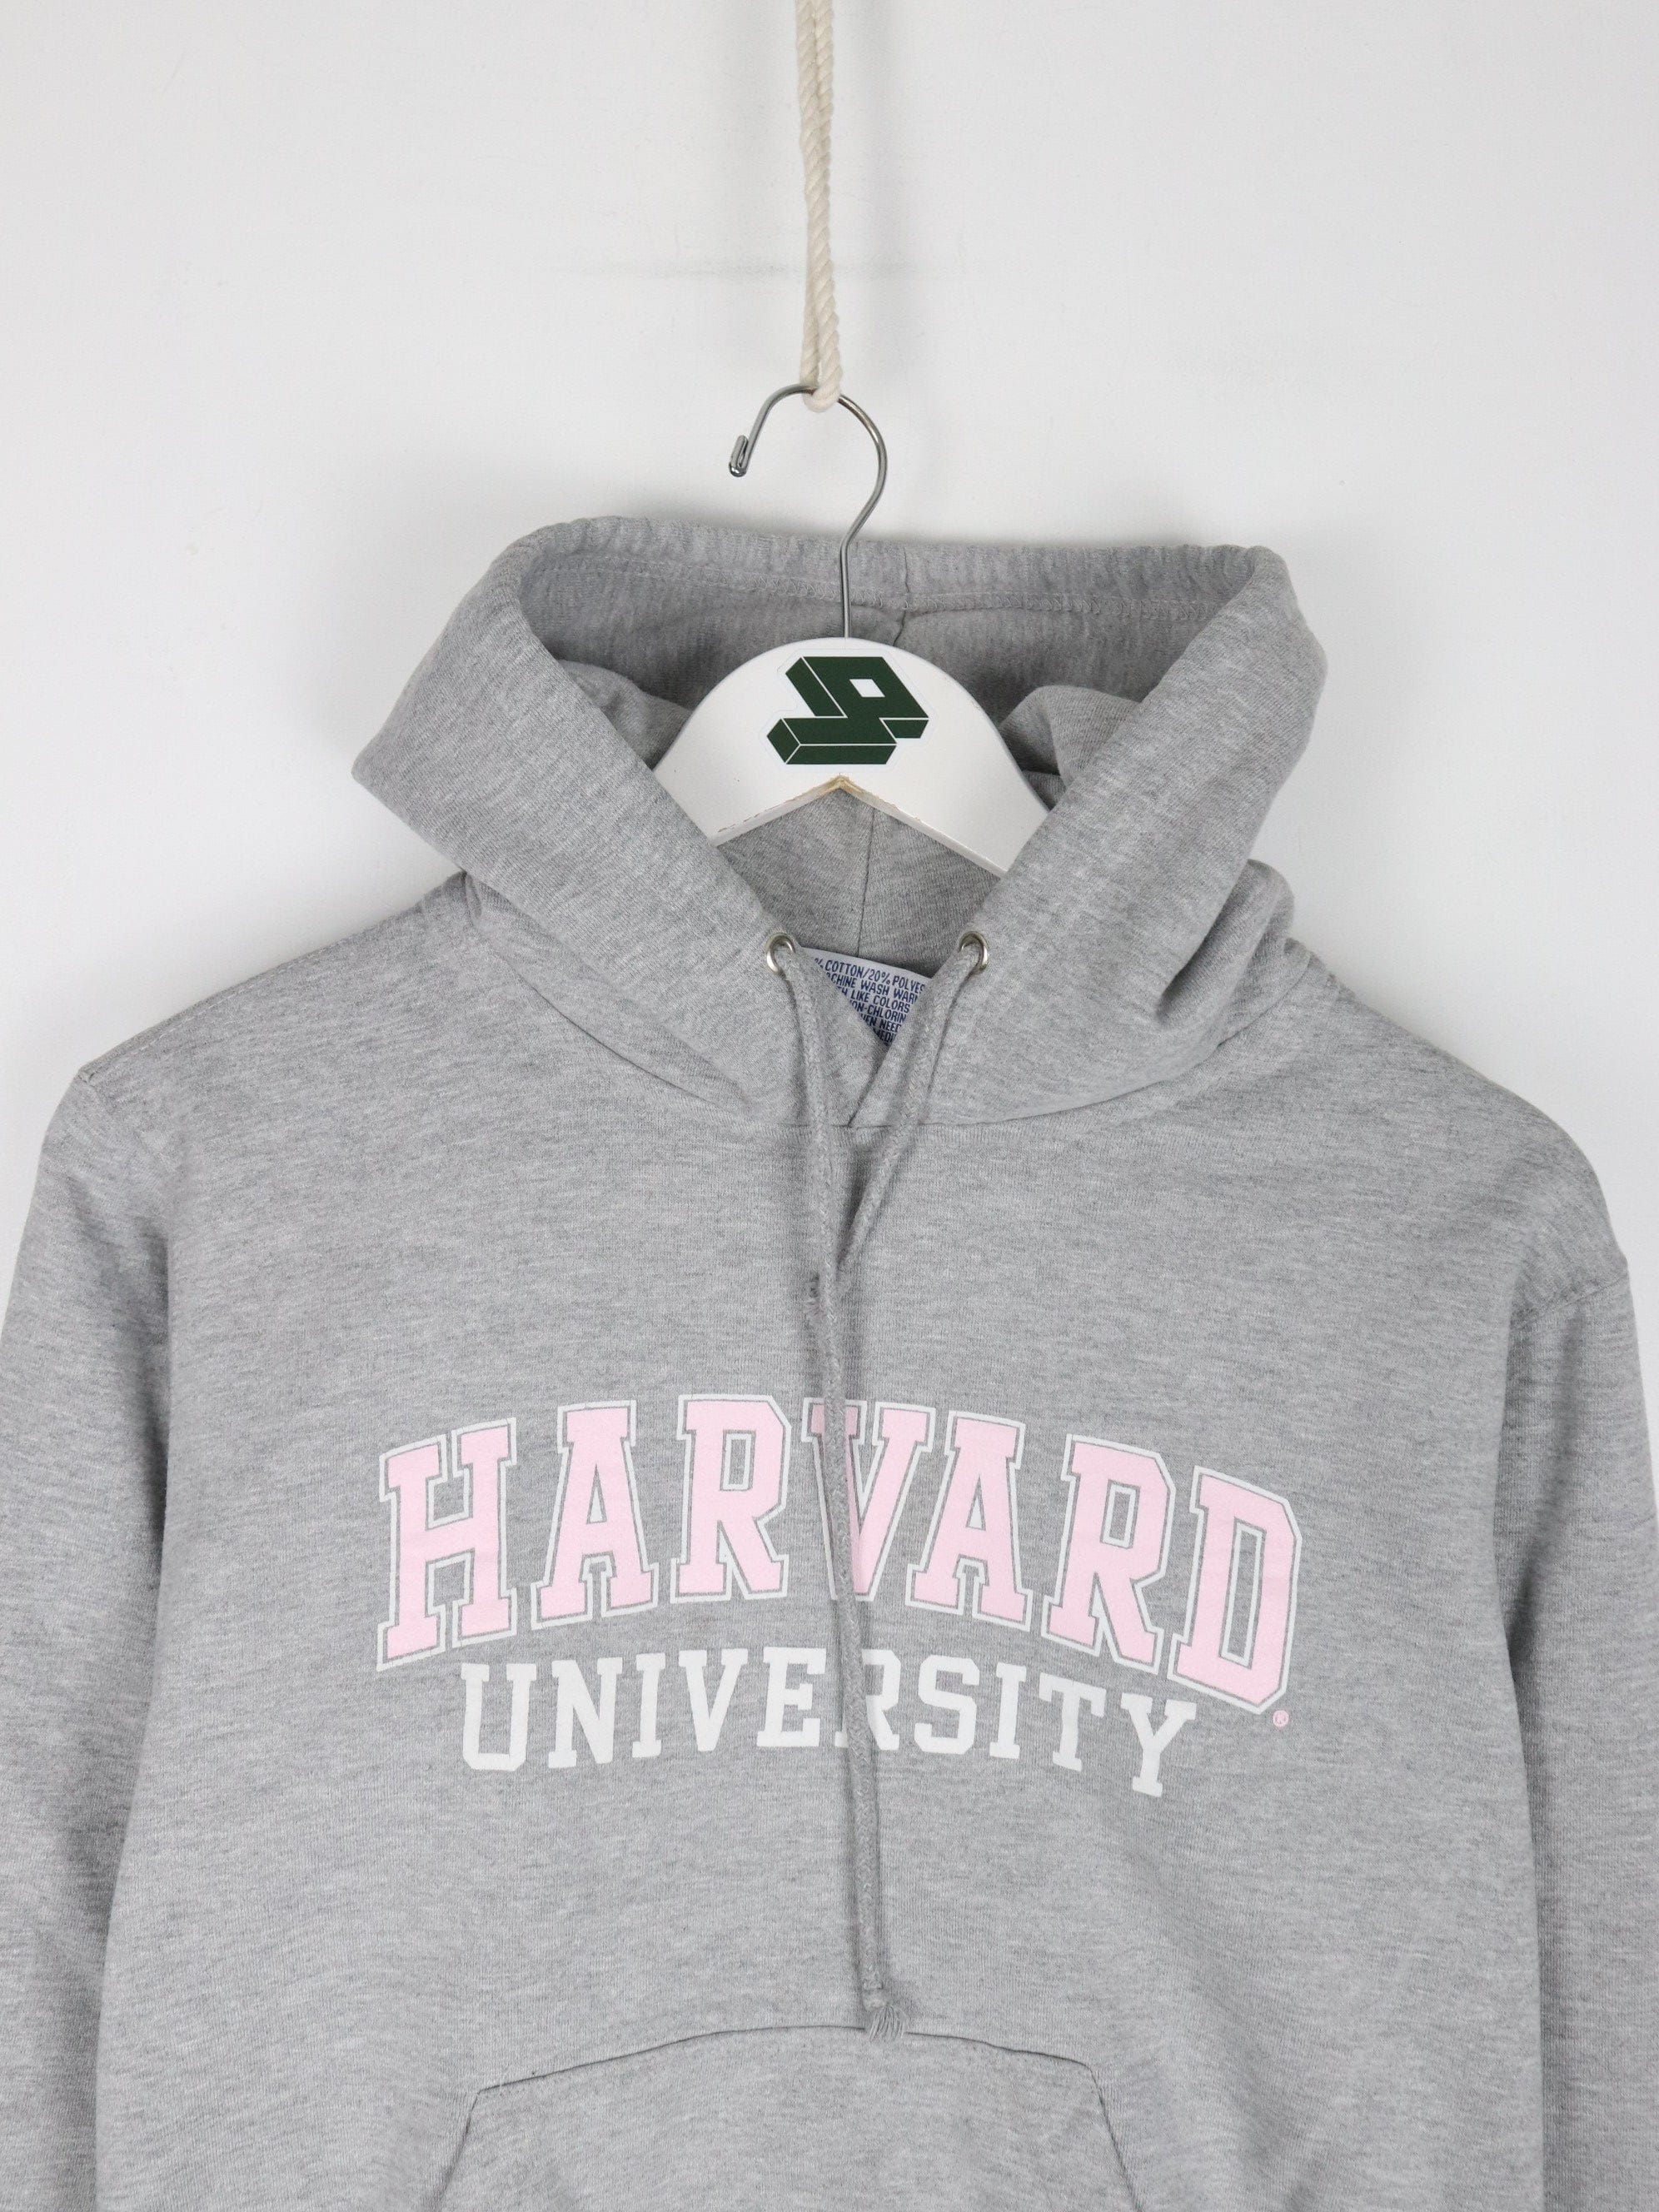 Harvard University Sweatshirt Womens Medium Grey College Hoodie – Proper  Vintage